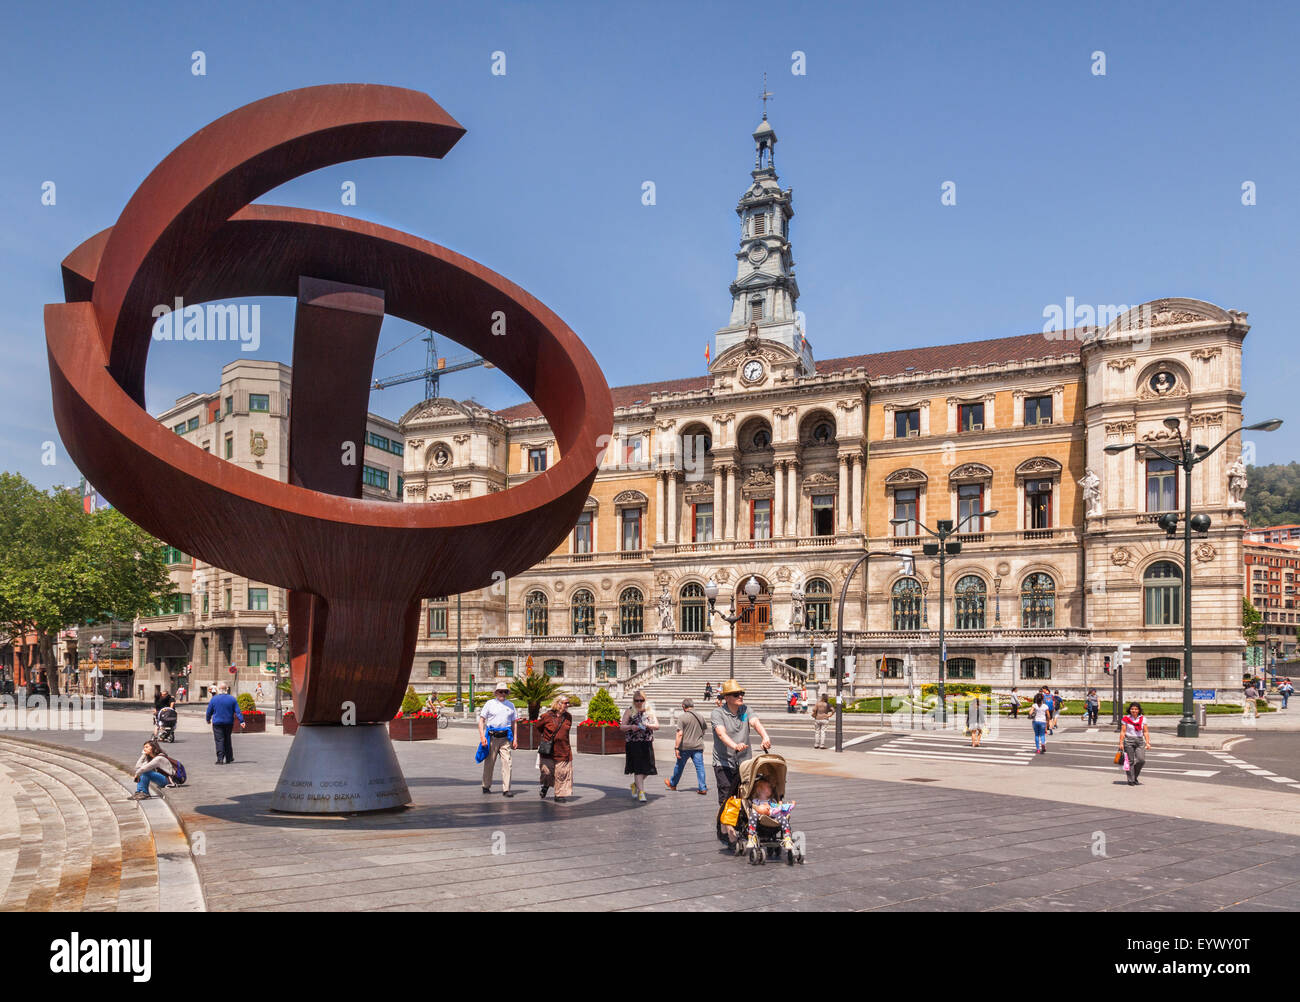 La escultura de Jorge Oteiza, la alternativa ovoide, y el Ayuntamiento de Bilbao, Bilbao, España Foto de stock